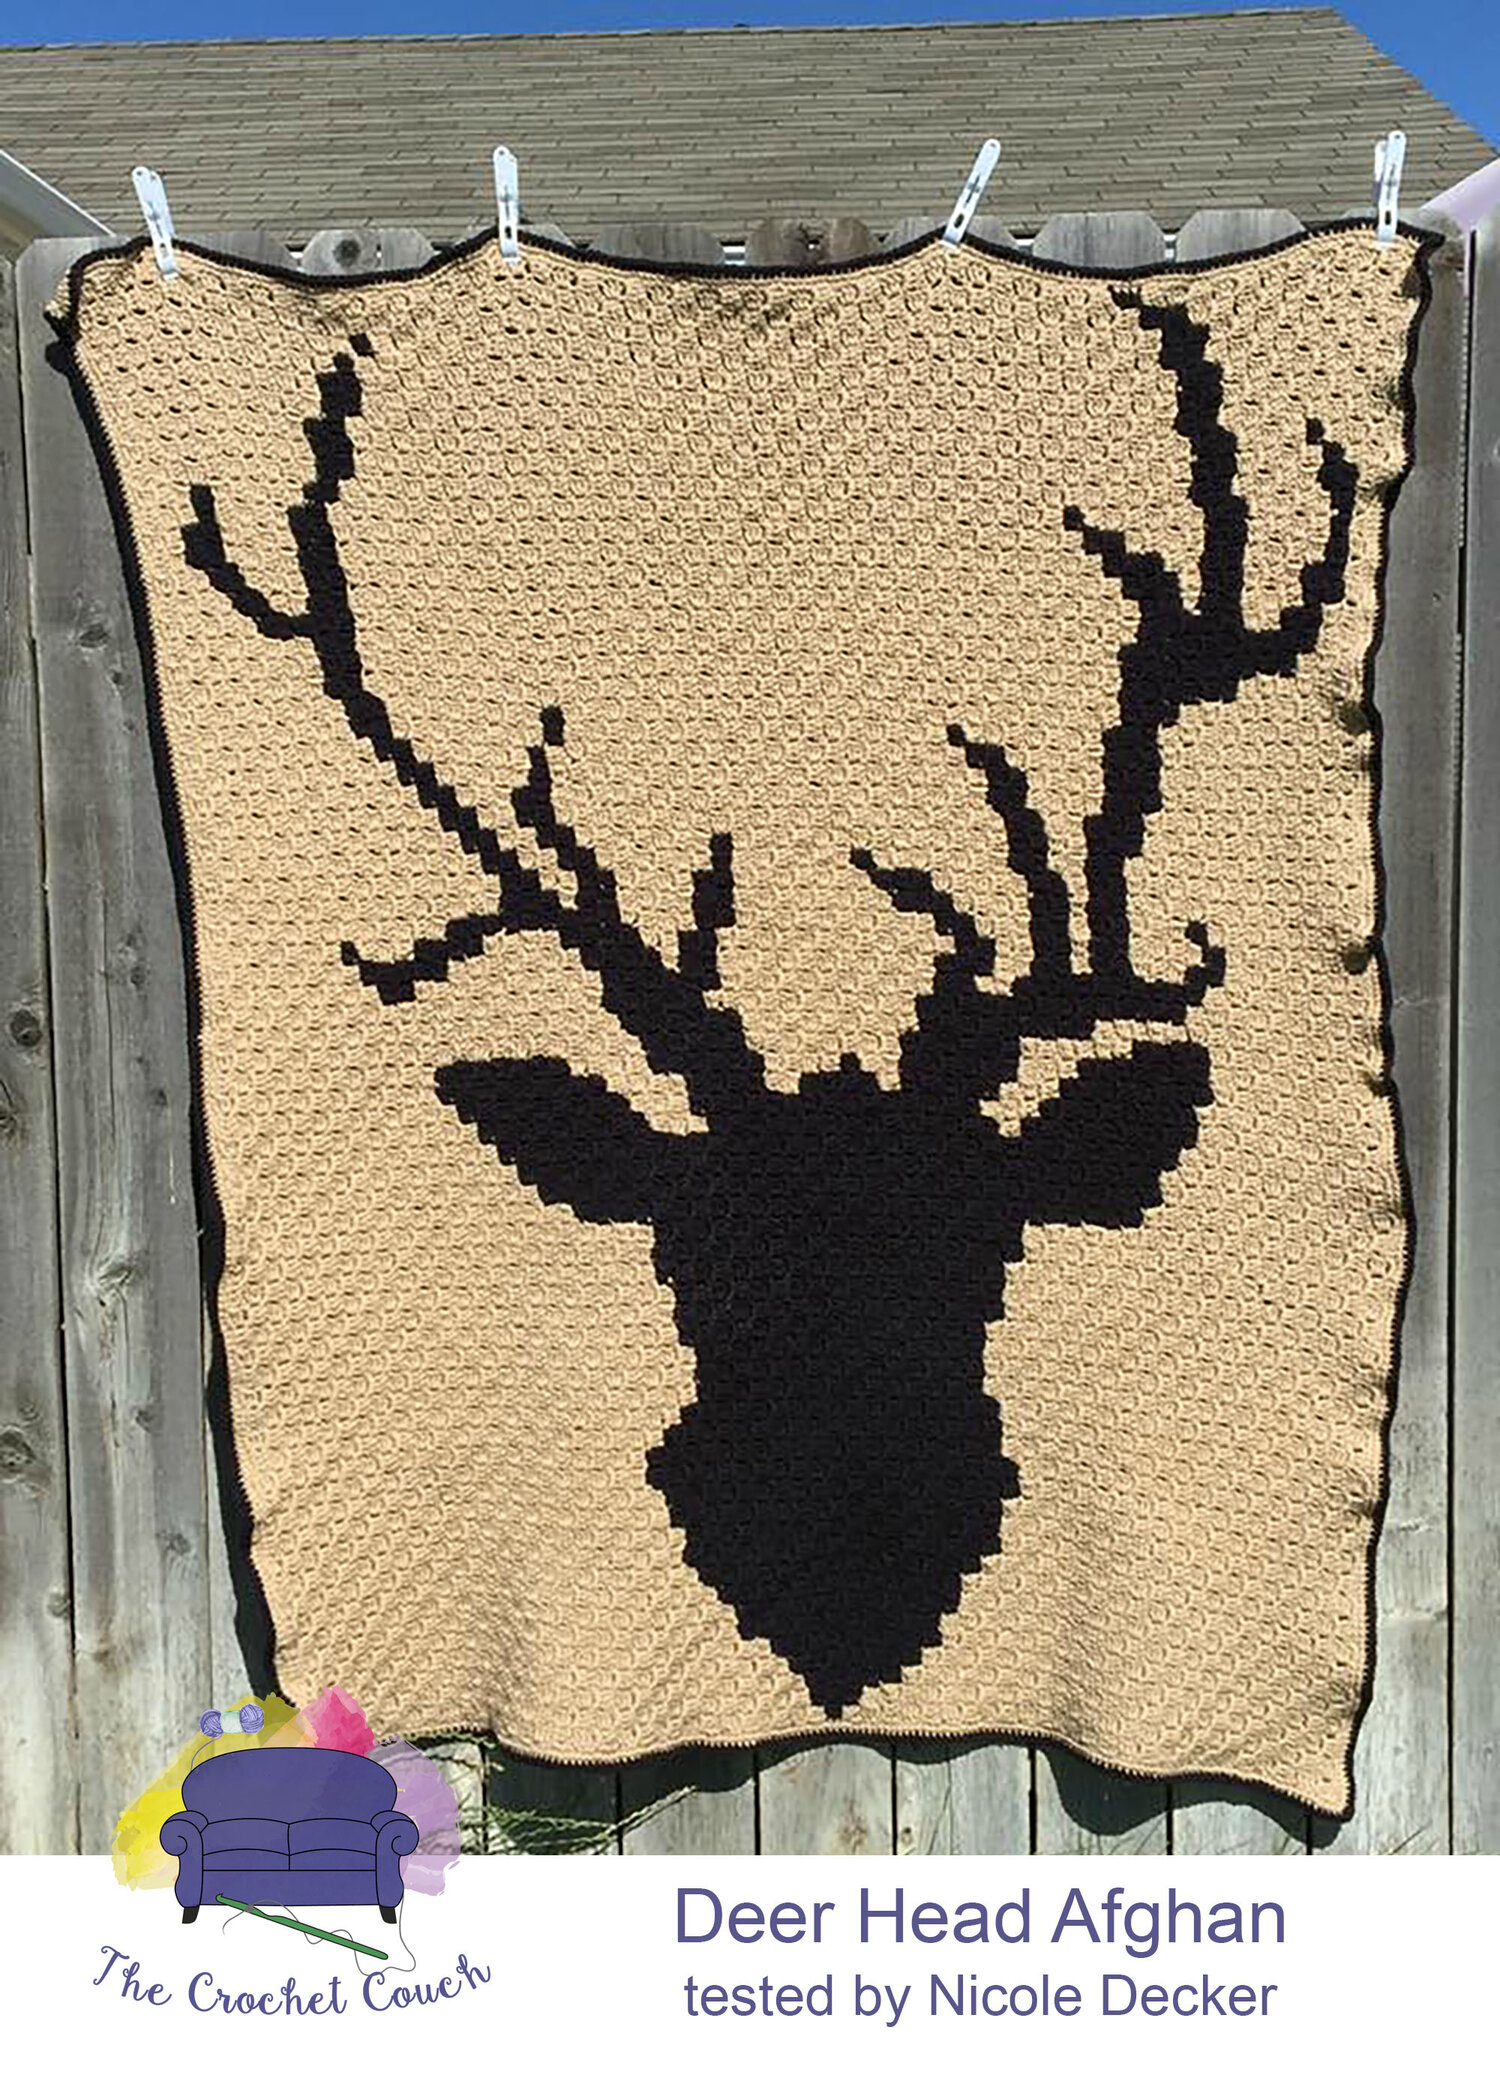 Deer Head Crochet Baby Blanket